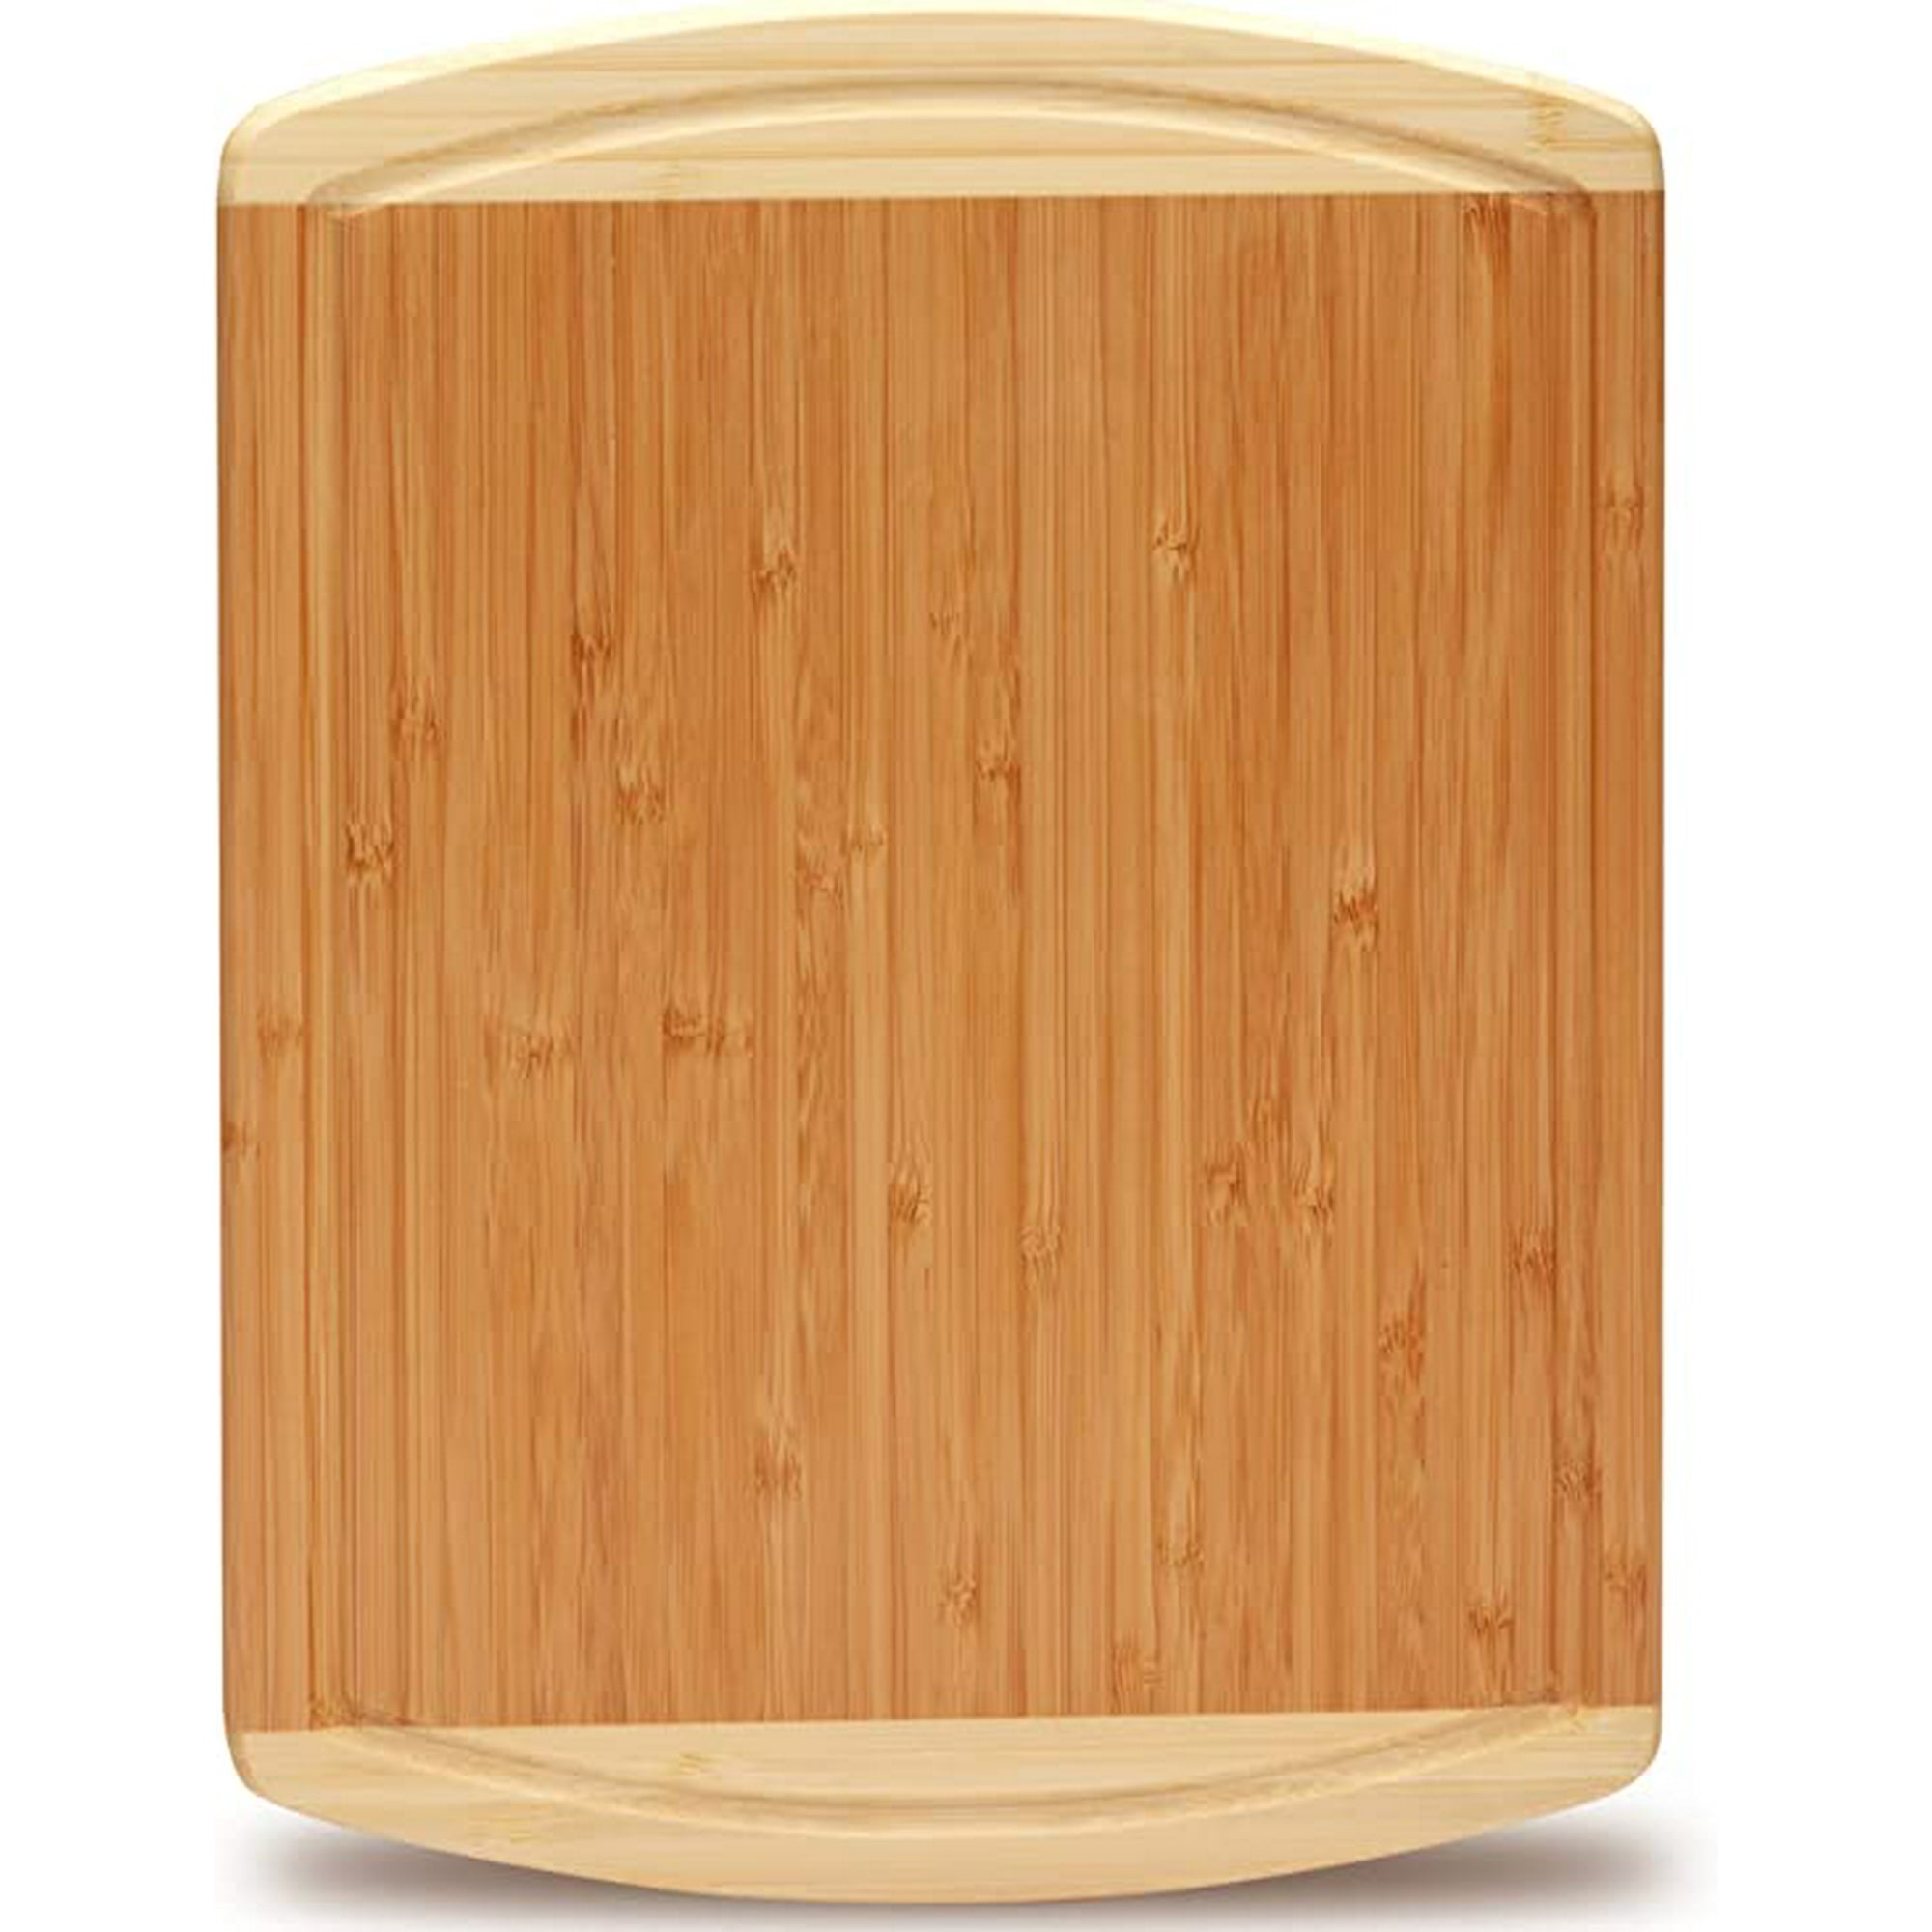  Tabla de cortar de madera para cocina: tabla de cortar de  madera de bambú orgánico con ranuras para jugos - La mejor tabla de cortar  de madera para carne y verduras 